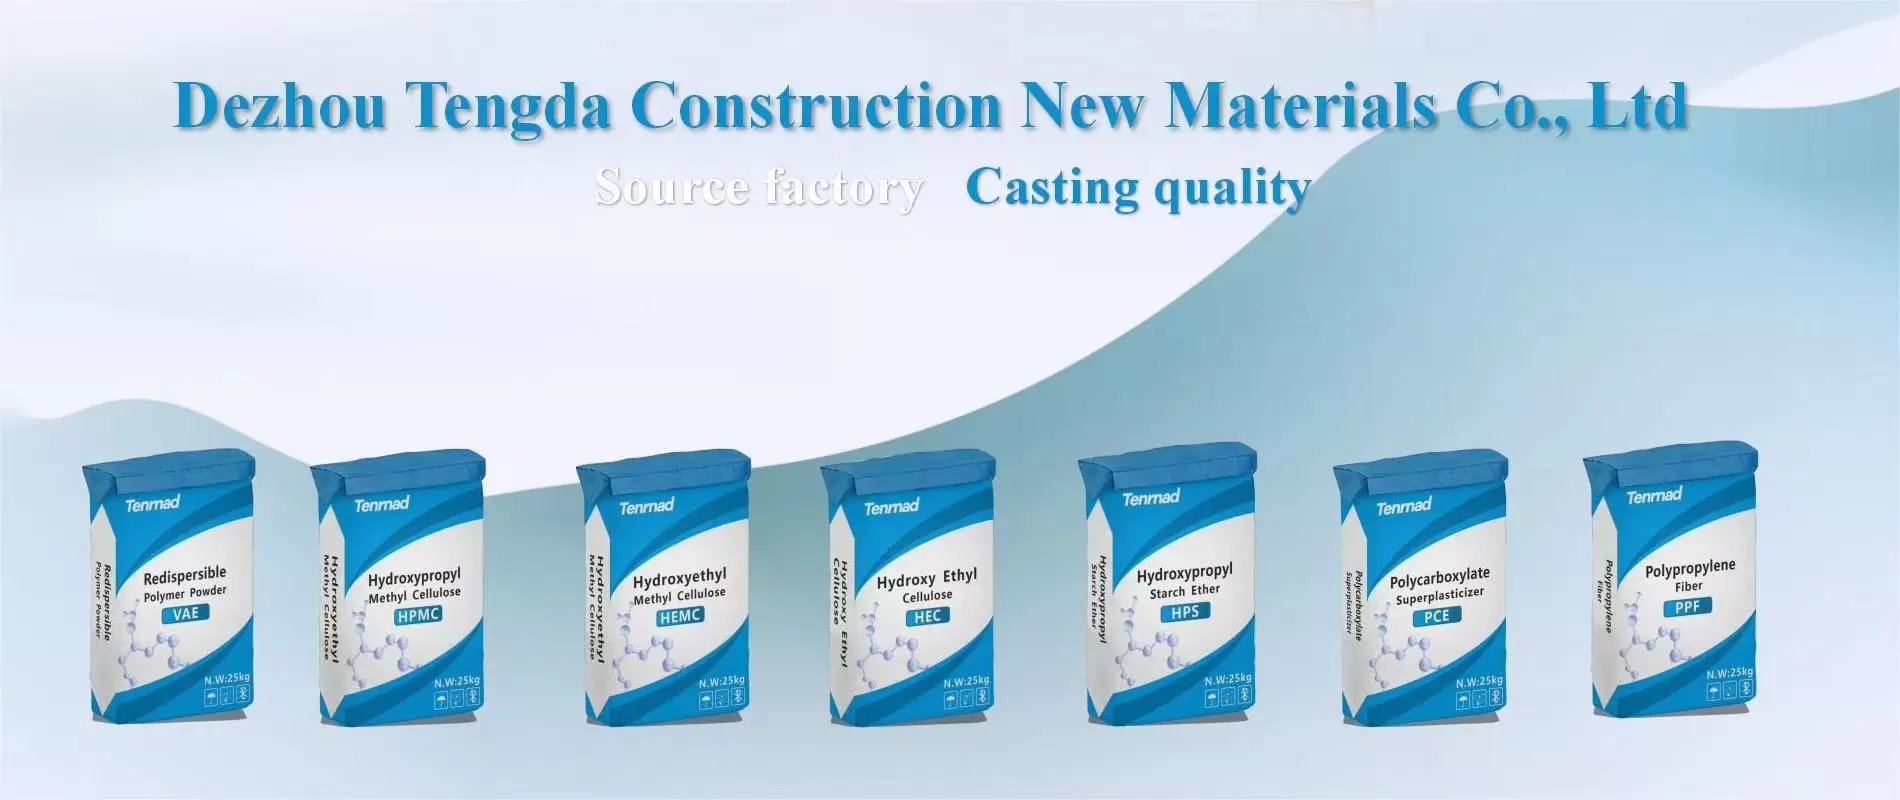 Dezhou Tengda Building New Materials Co., Ltd.